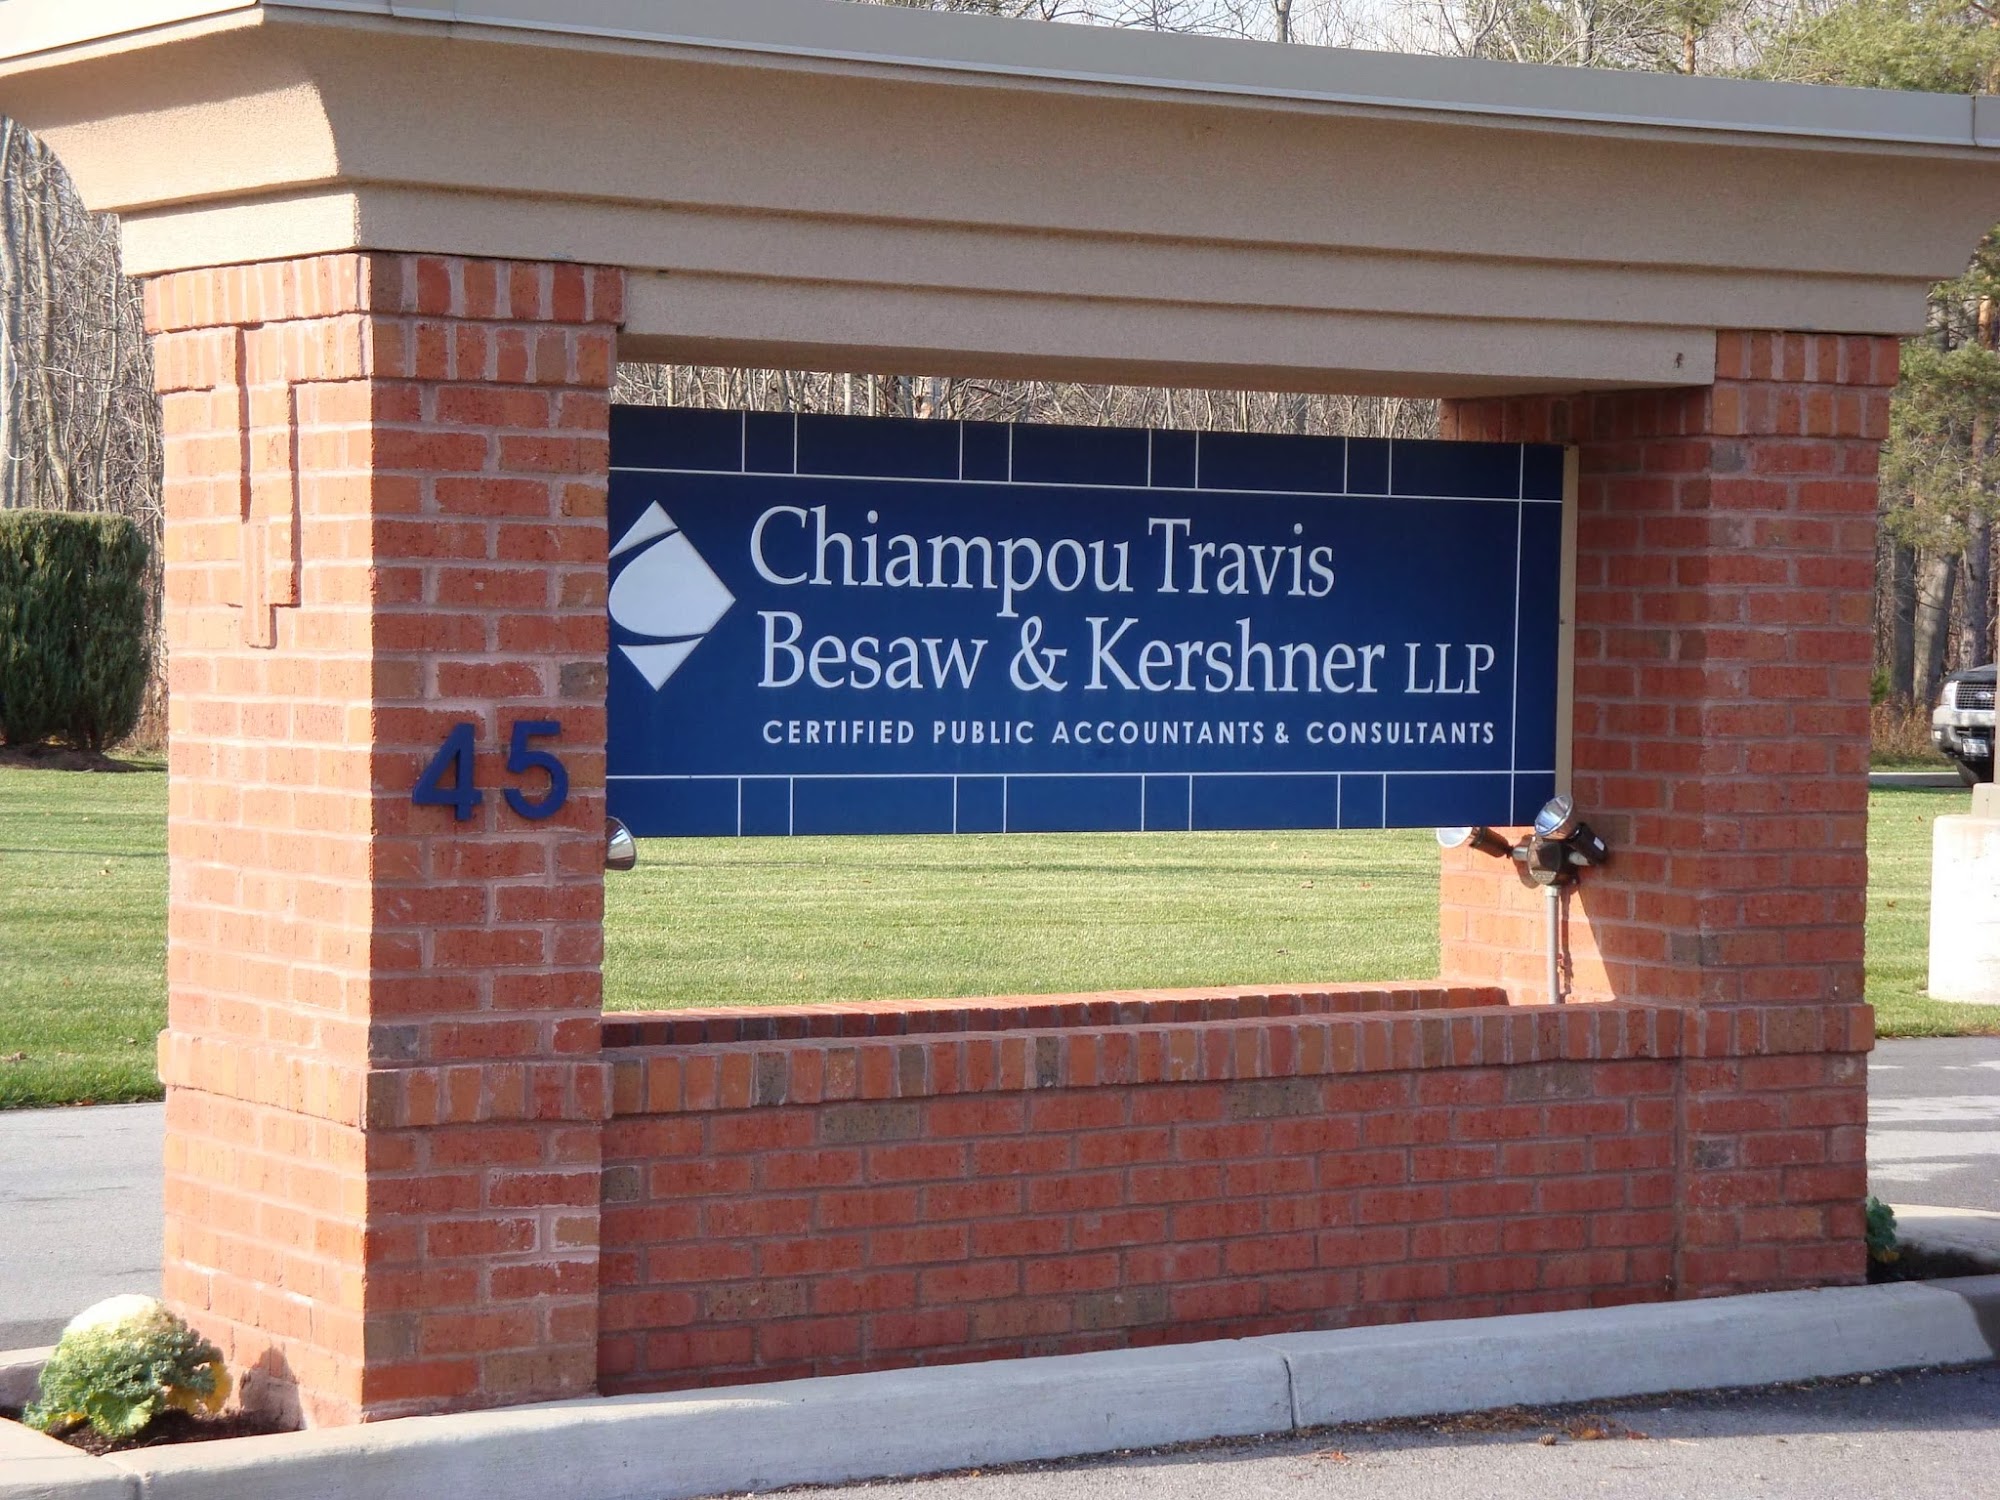 CTBK - Chiampou Travis Besaw & Kershner LLP